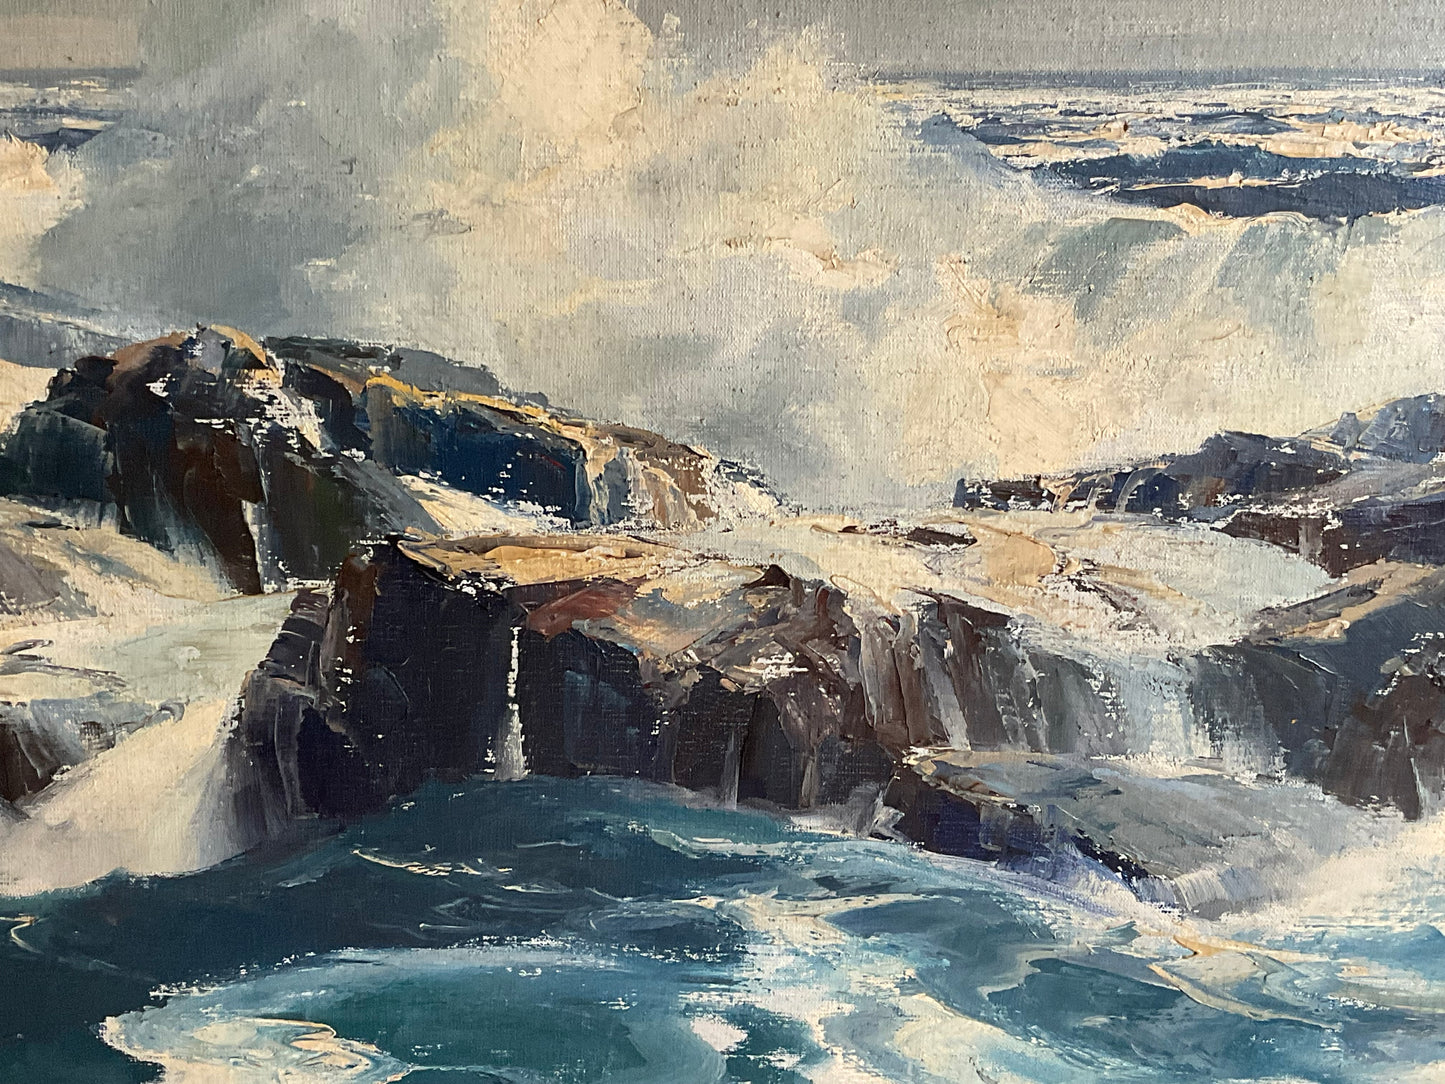 Storm Brewing Oil Painting B. Bradbury